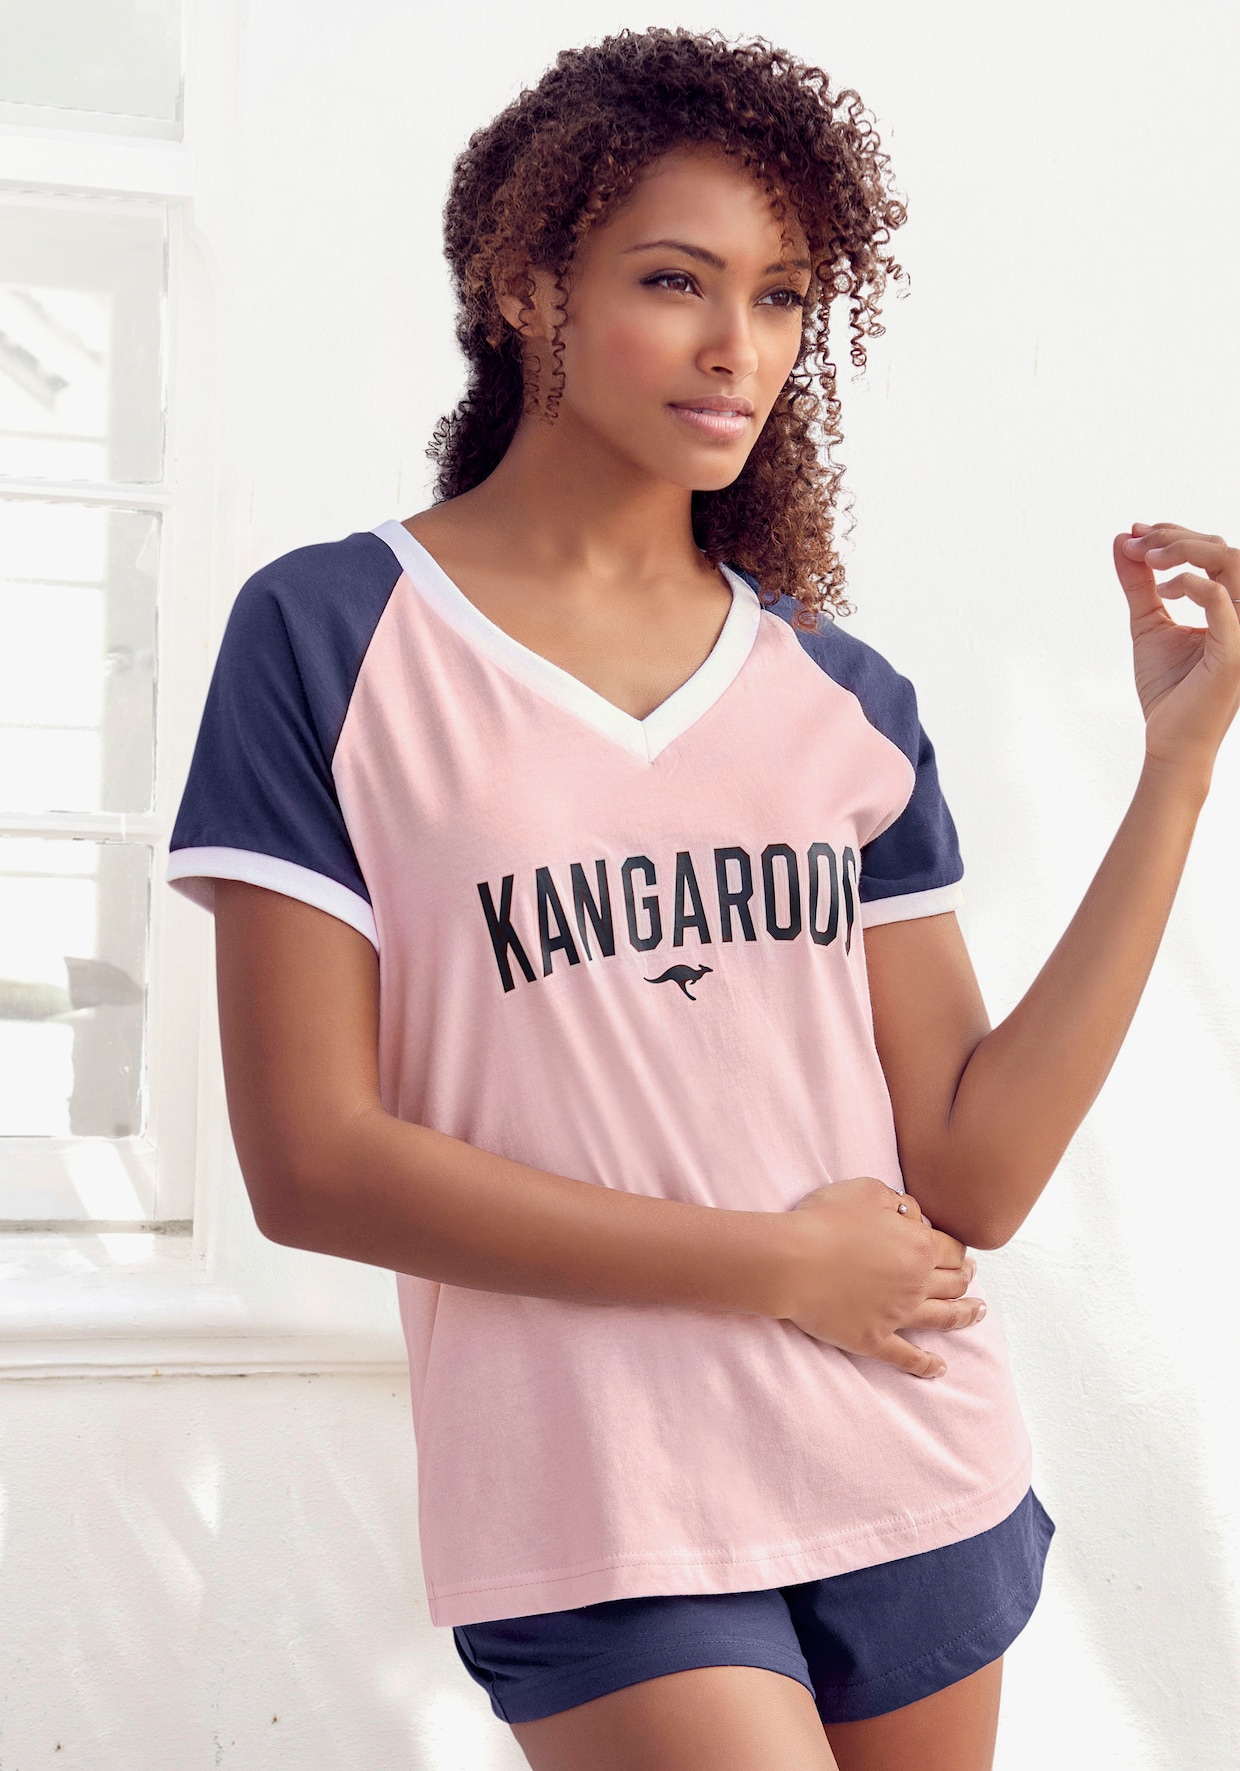 KangaROOS shortama - roze/donkerblauw